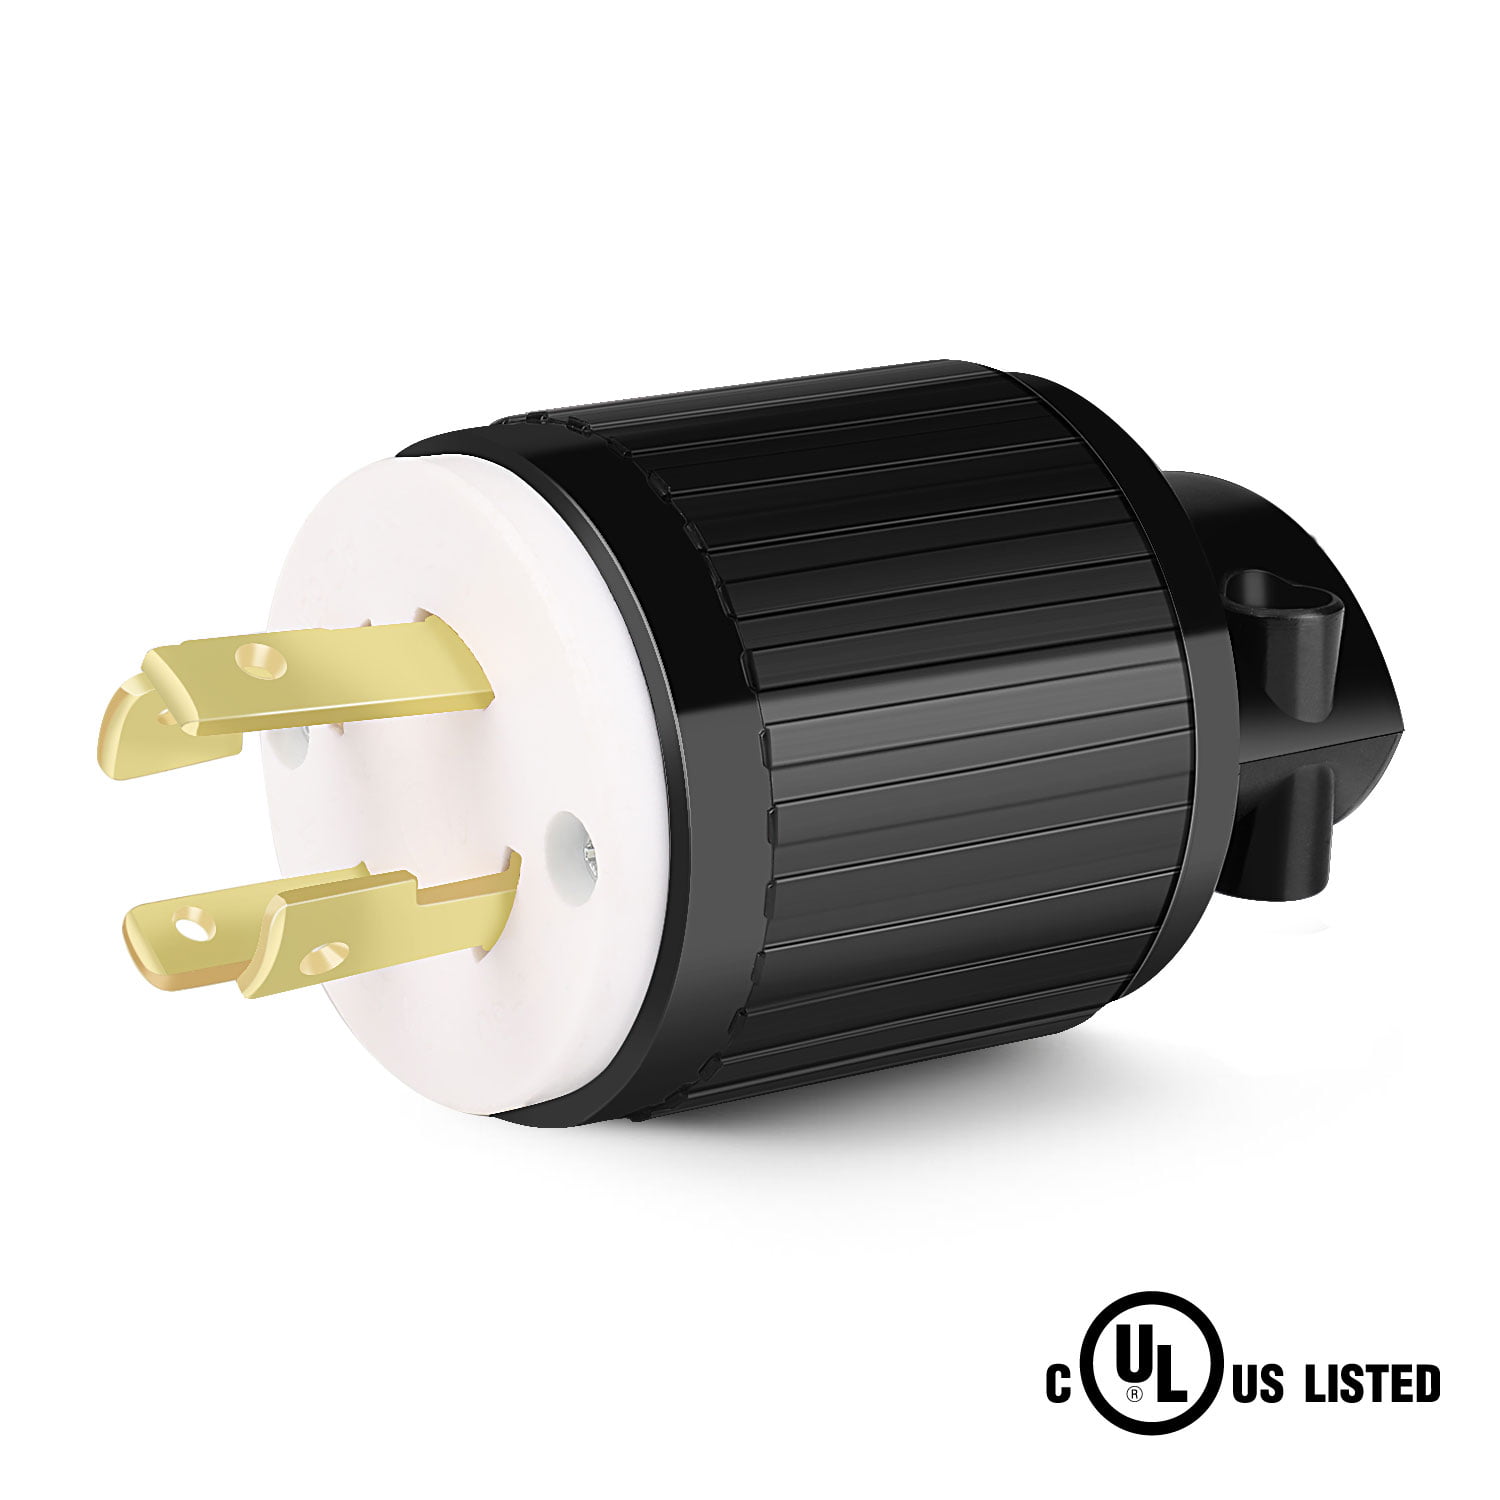 L14-30 Locking Male Plug For Socket-outlet 30Amp 125/250Volt UL Approved US